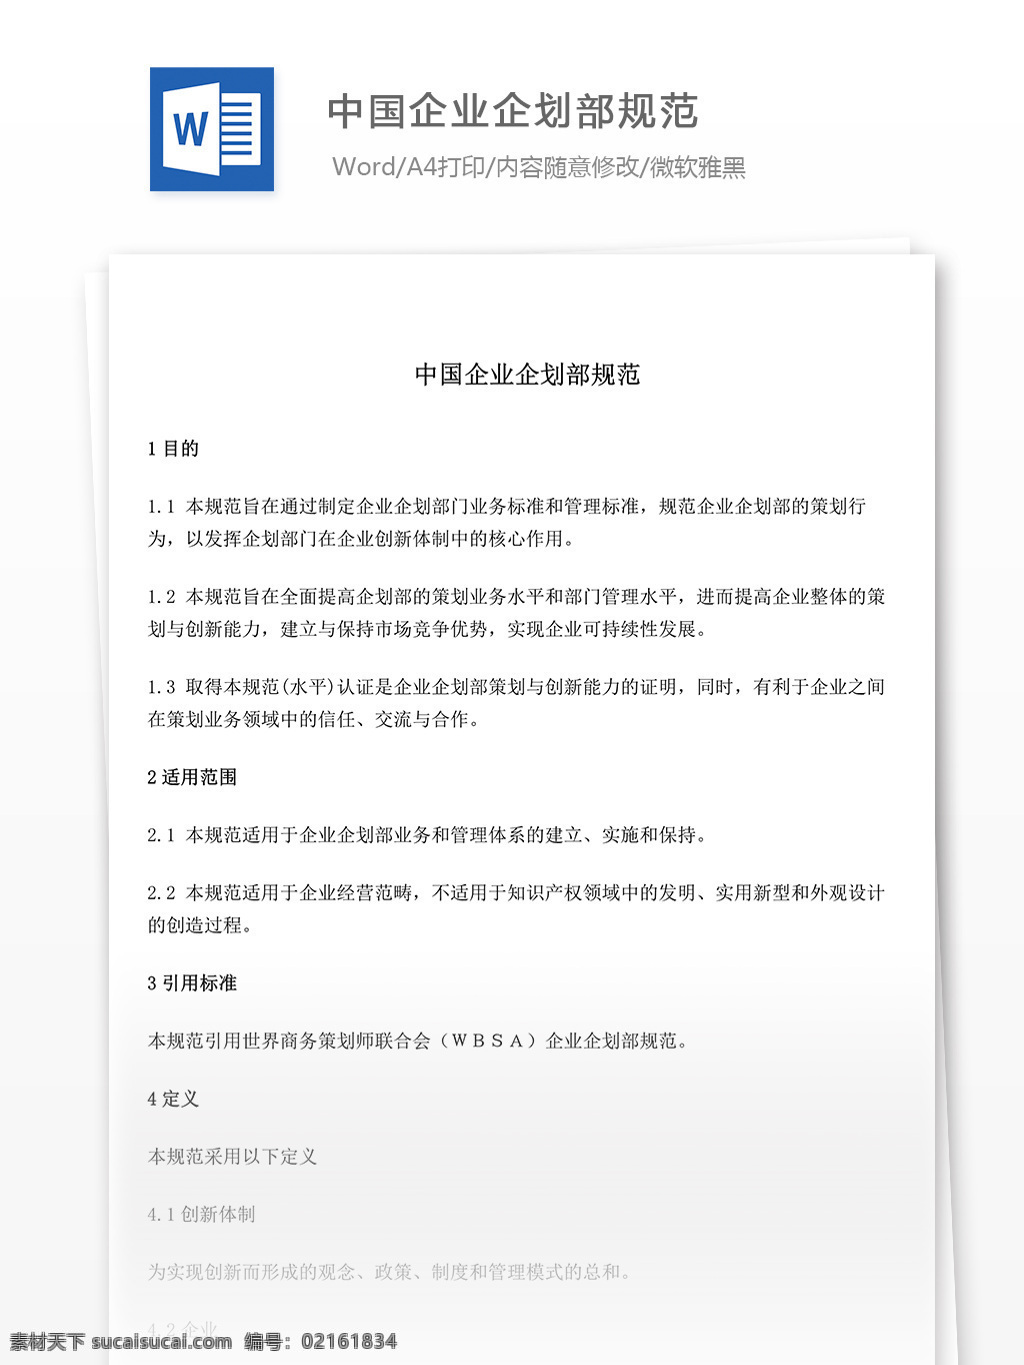 中国企业 企划部 规范 中国 企业 企划部规范 文档 world 文档模板 广告 文案 策划 广告策划 报告